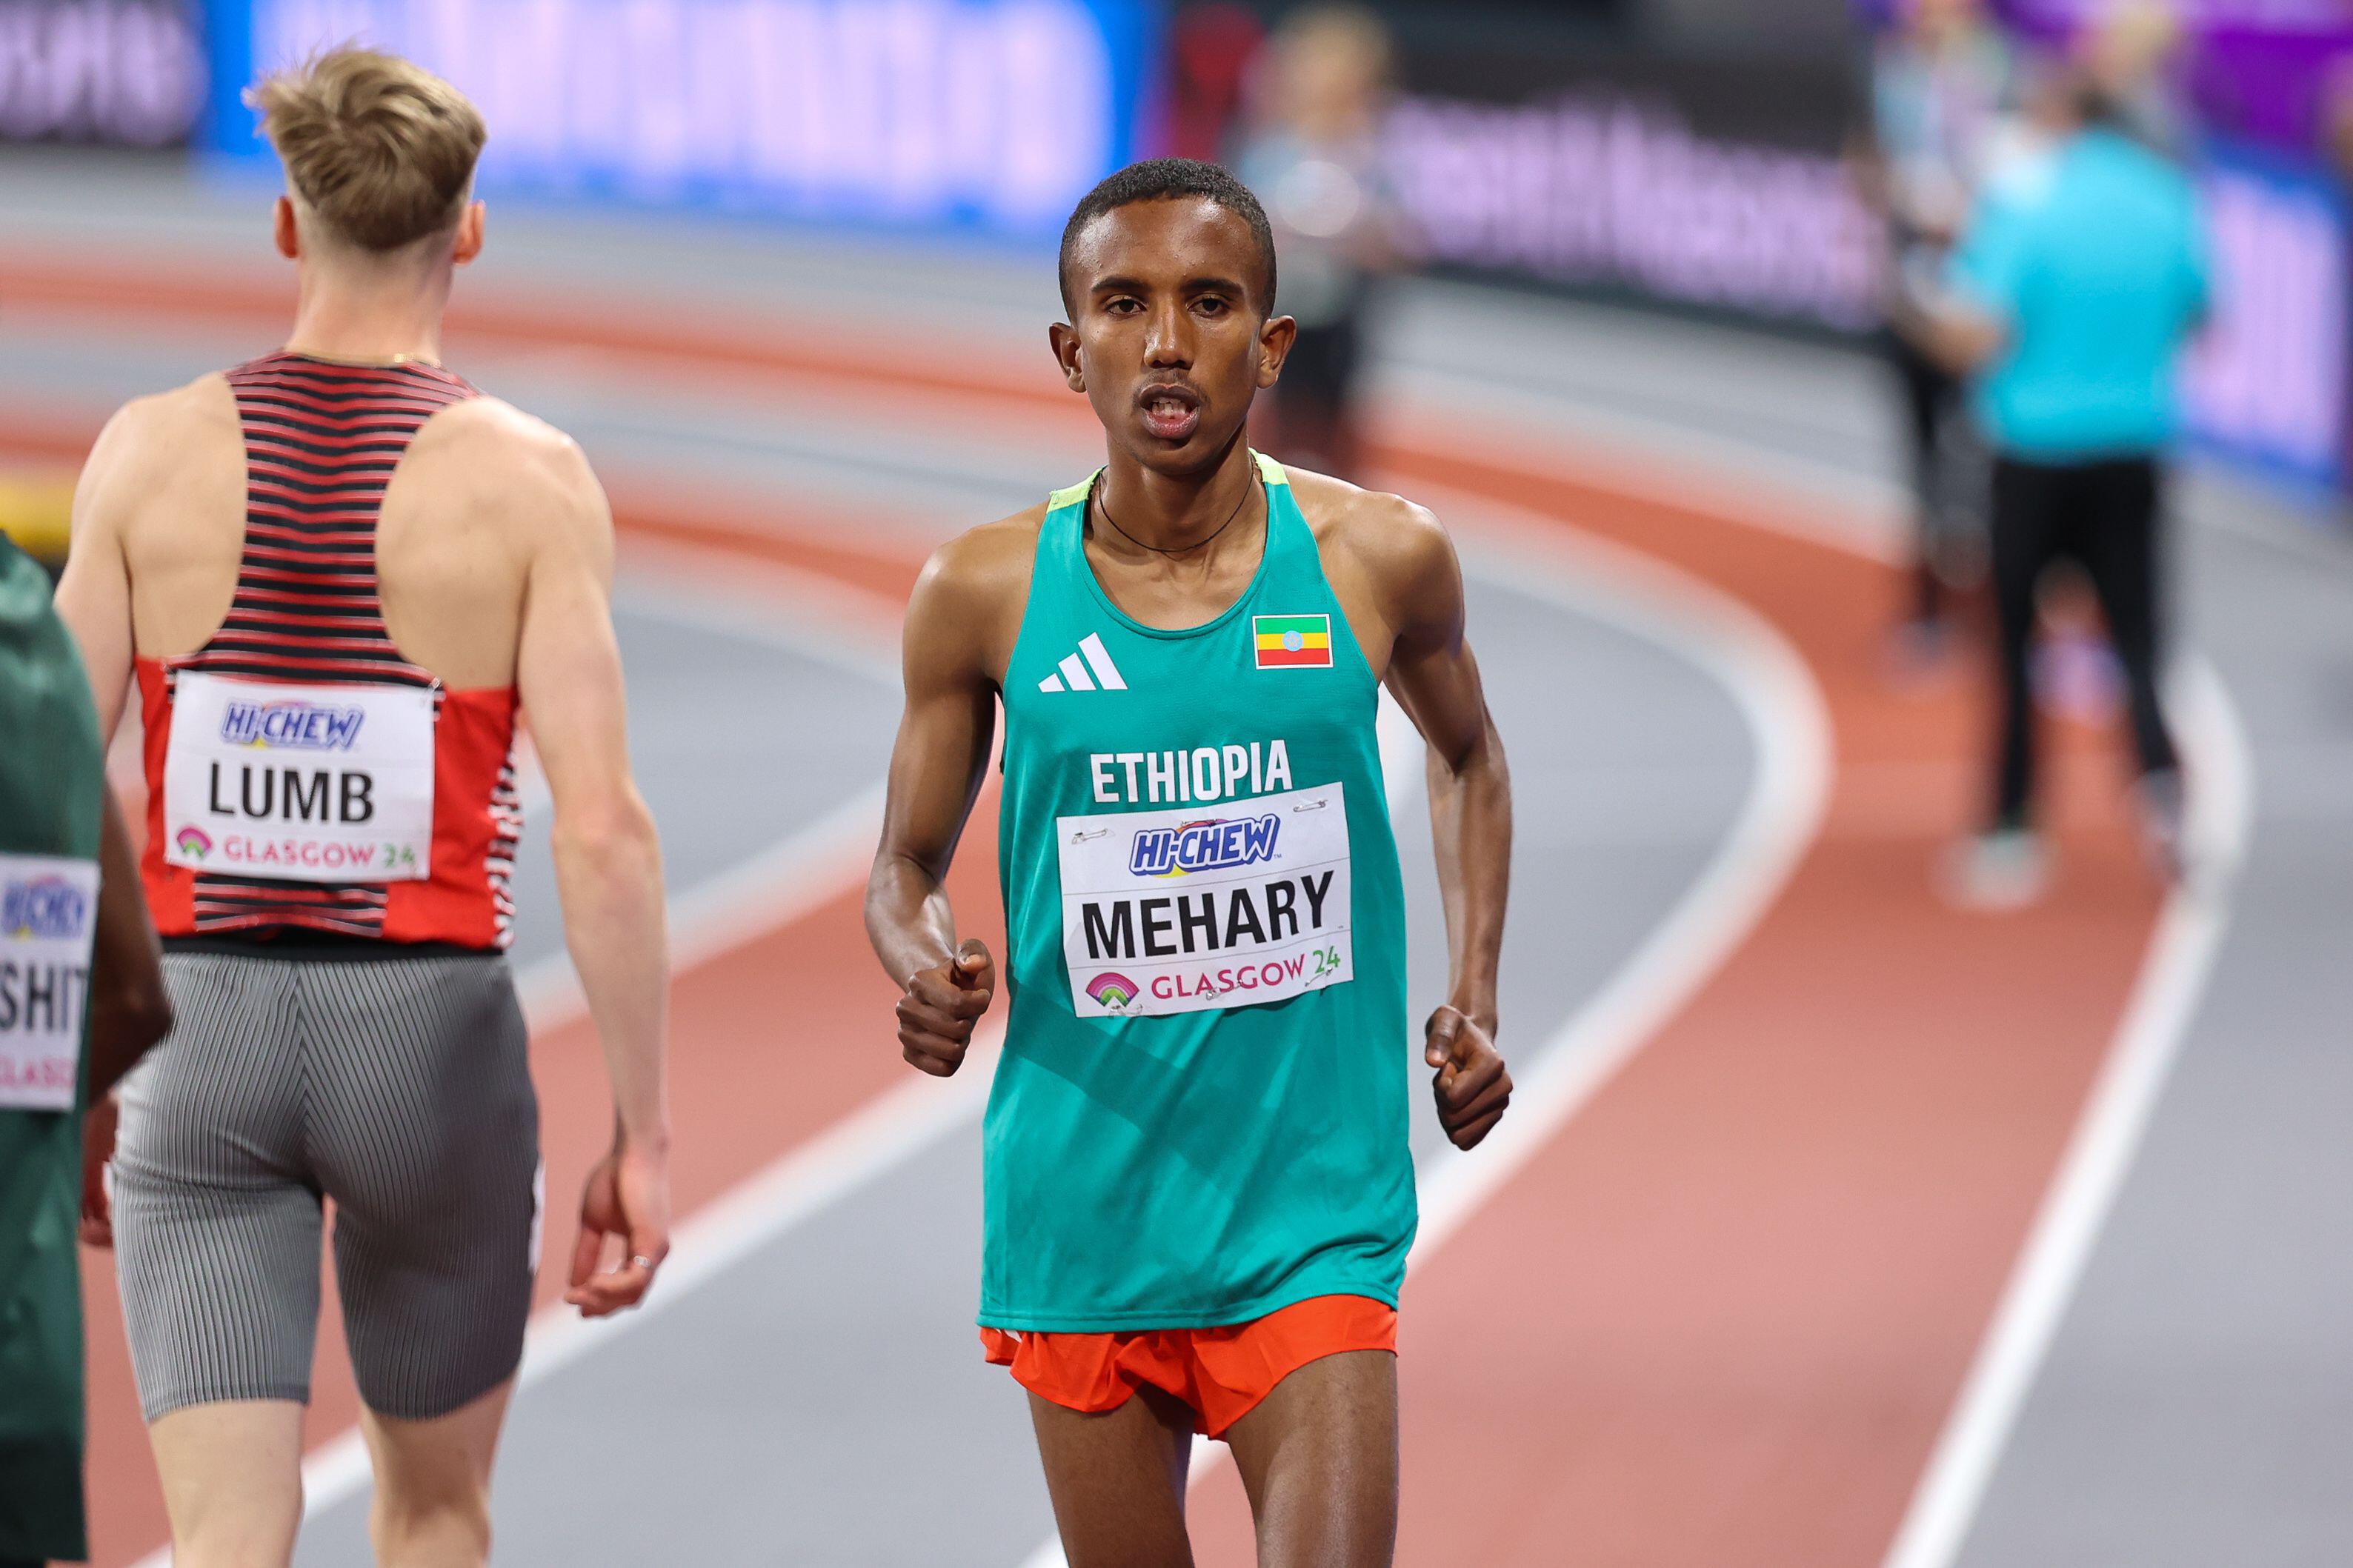 Auch der äthiopische Läufer Biniam Mehary stolperte in seinem Vorlauf und bekam daraufhin einen Platz im Finale am Sonntag zugesprochen